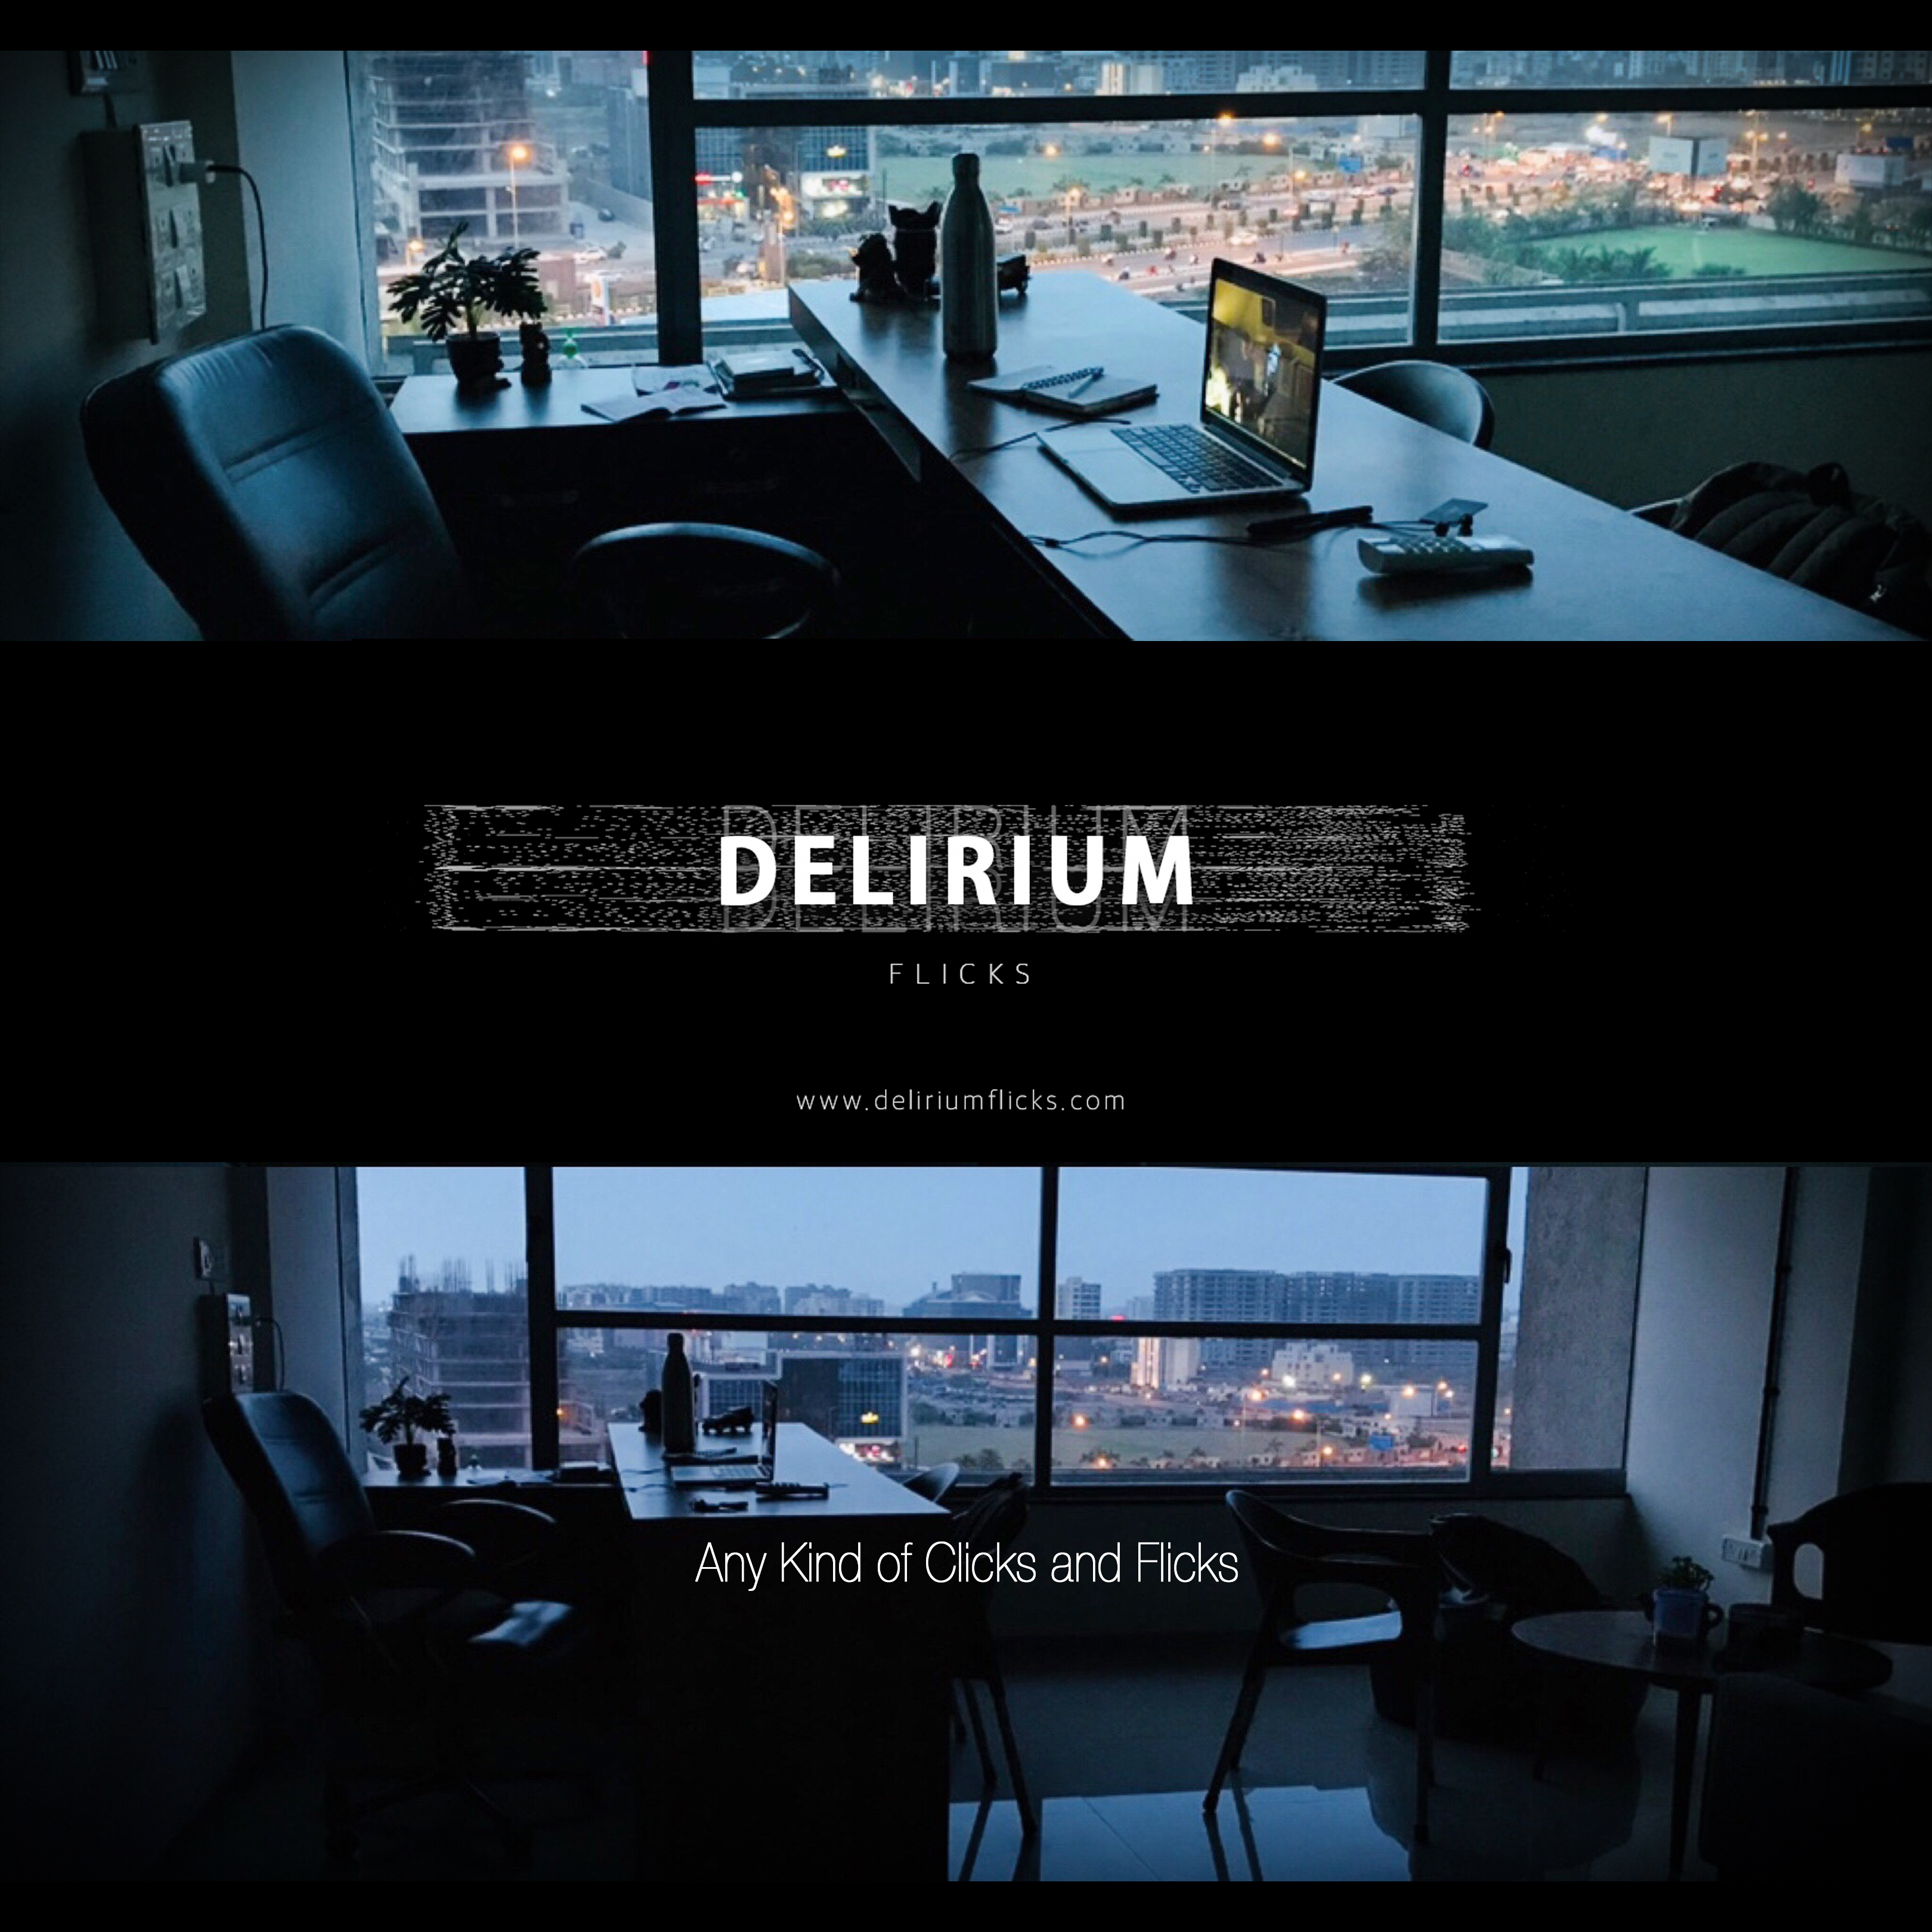 DELIRIUM FLICKS